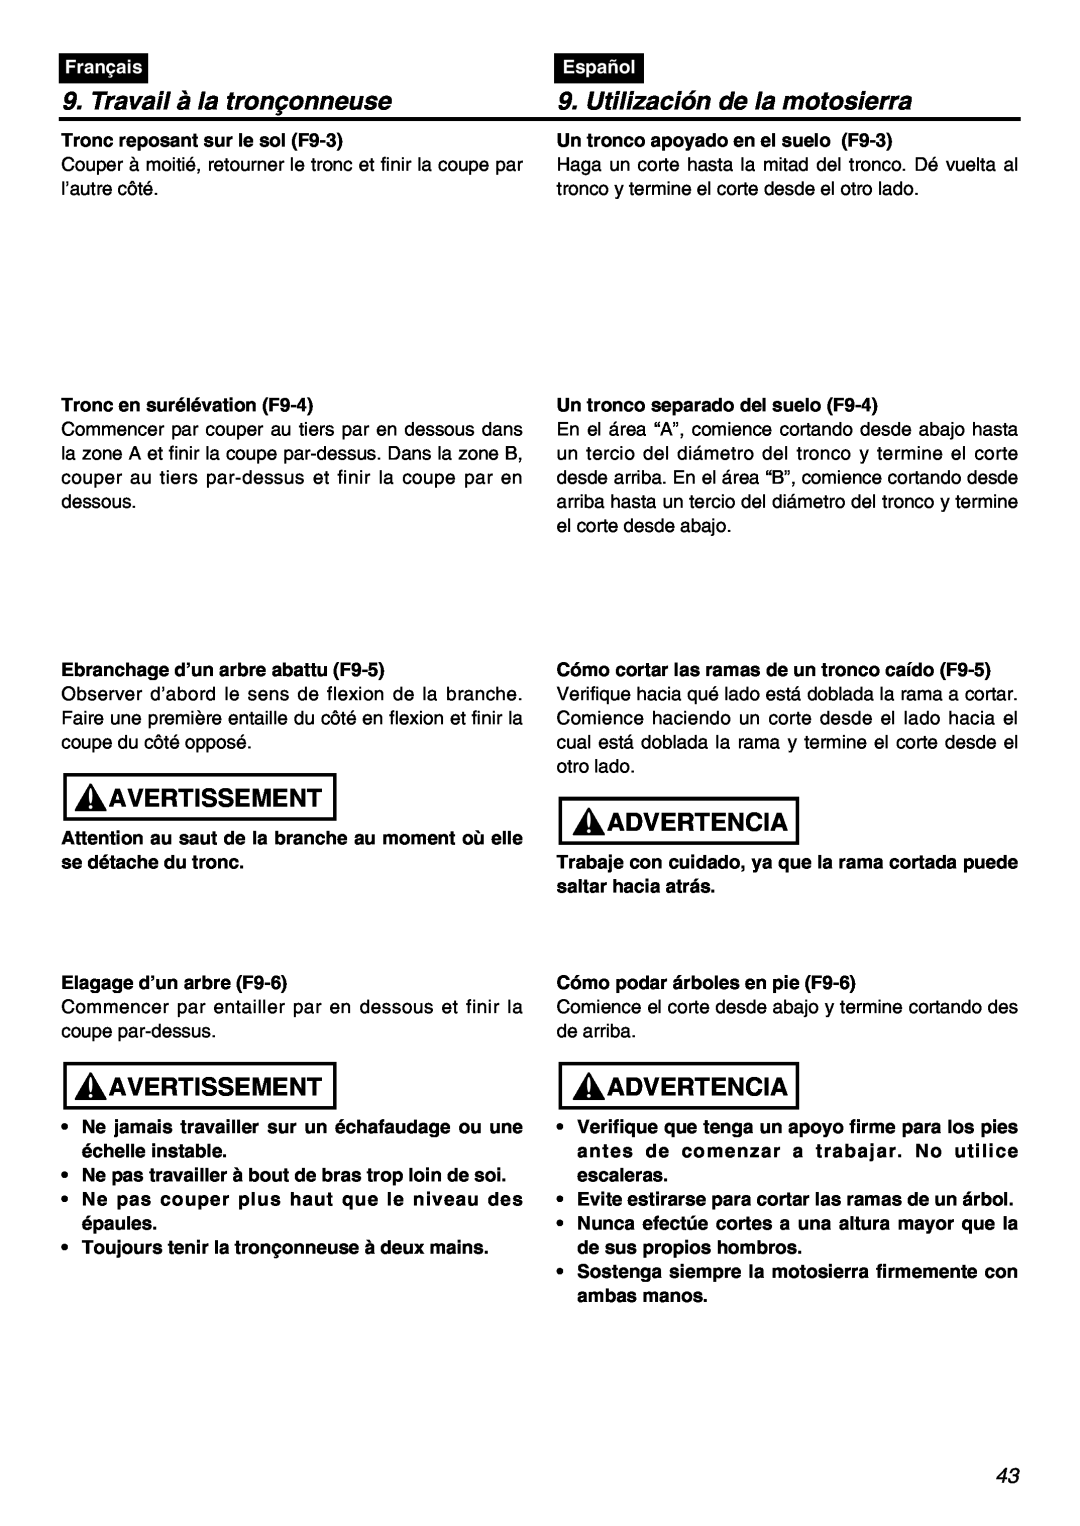 RedMax GZ400 manual Travail à la tronçonneuse, Utilización de la motosierra, Avertissement, Advertencia, Français, Español 